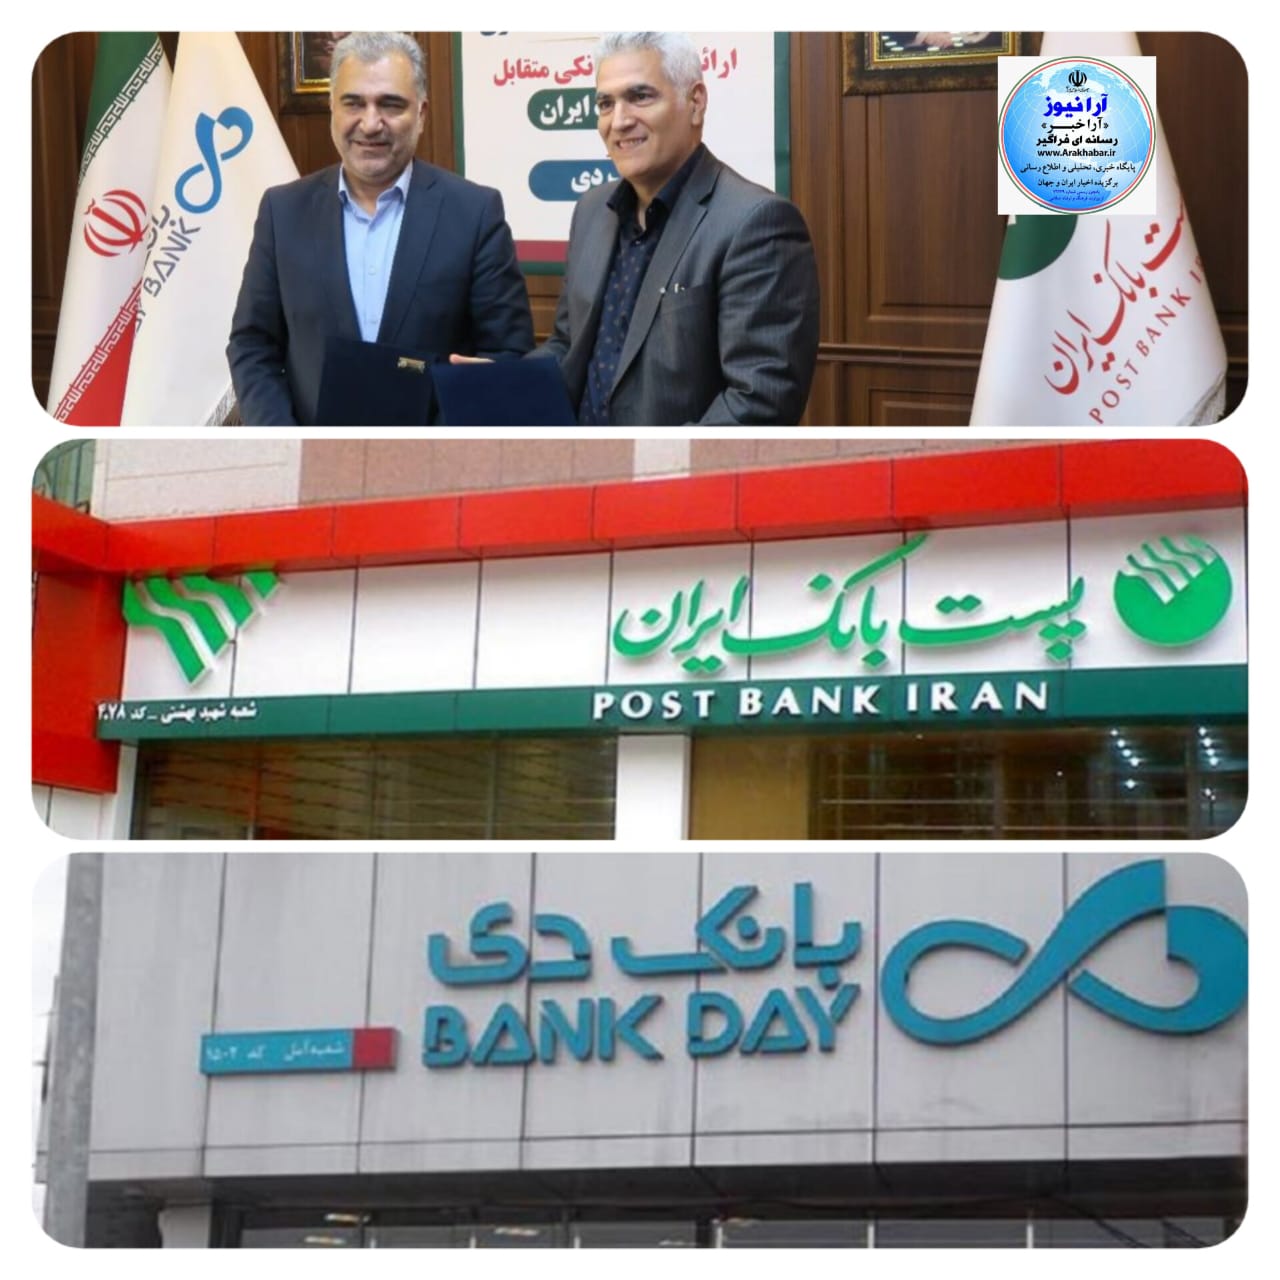 شفاف سازی و مبارزه با پولشویی از اولویت پست بانک ایران و بانک دی در این قرارداد است/ پست بانک ایران و بانک دی قرارداد همکاری مشترک امضا کردند